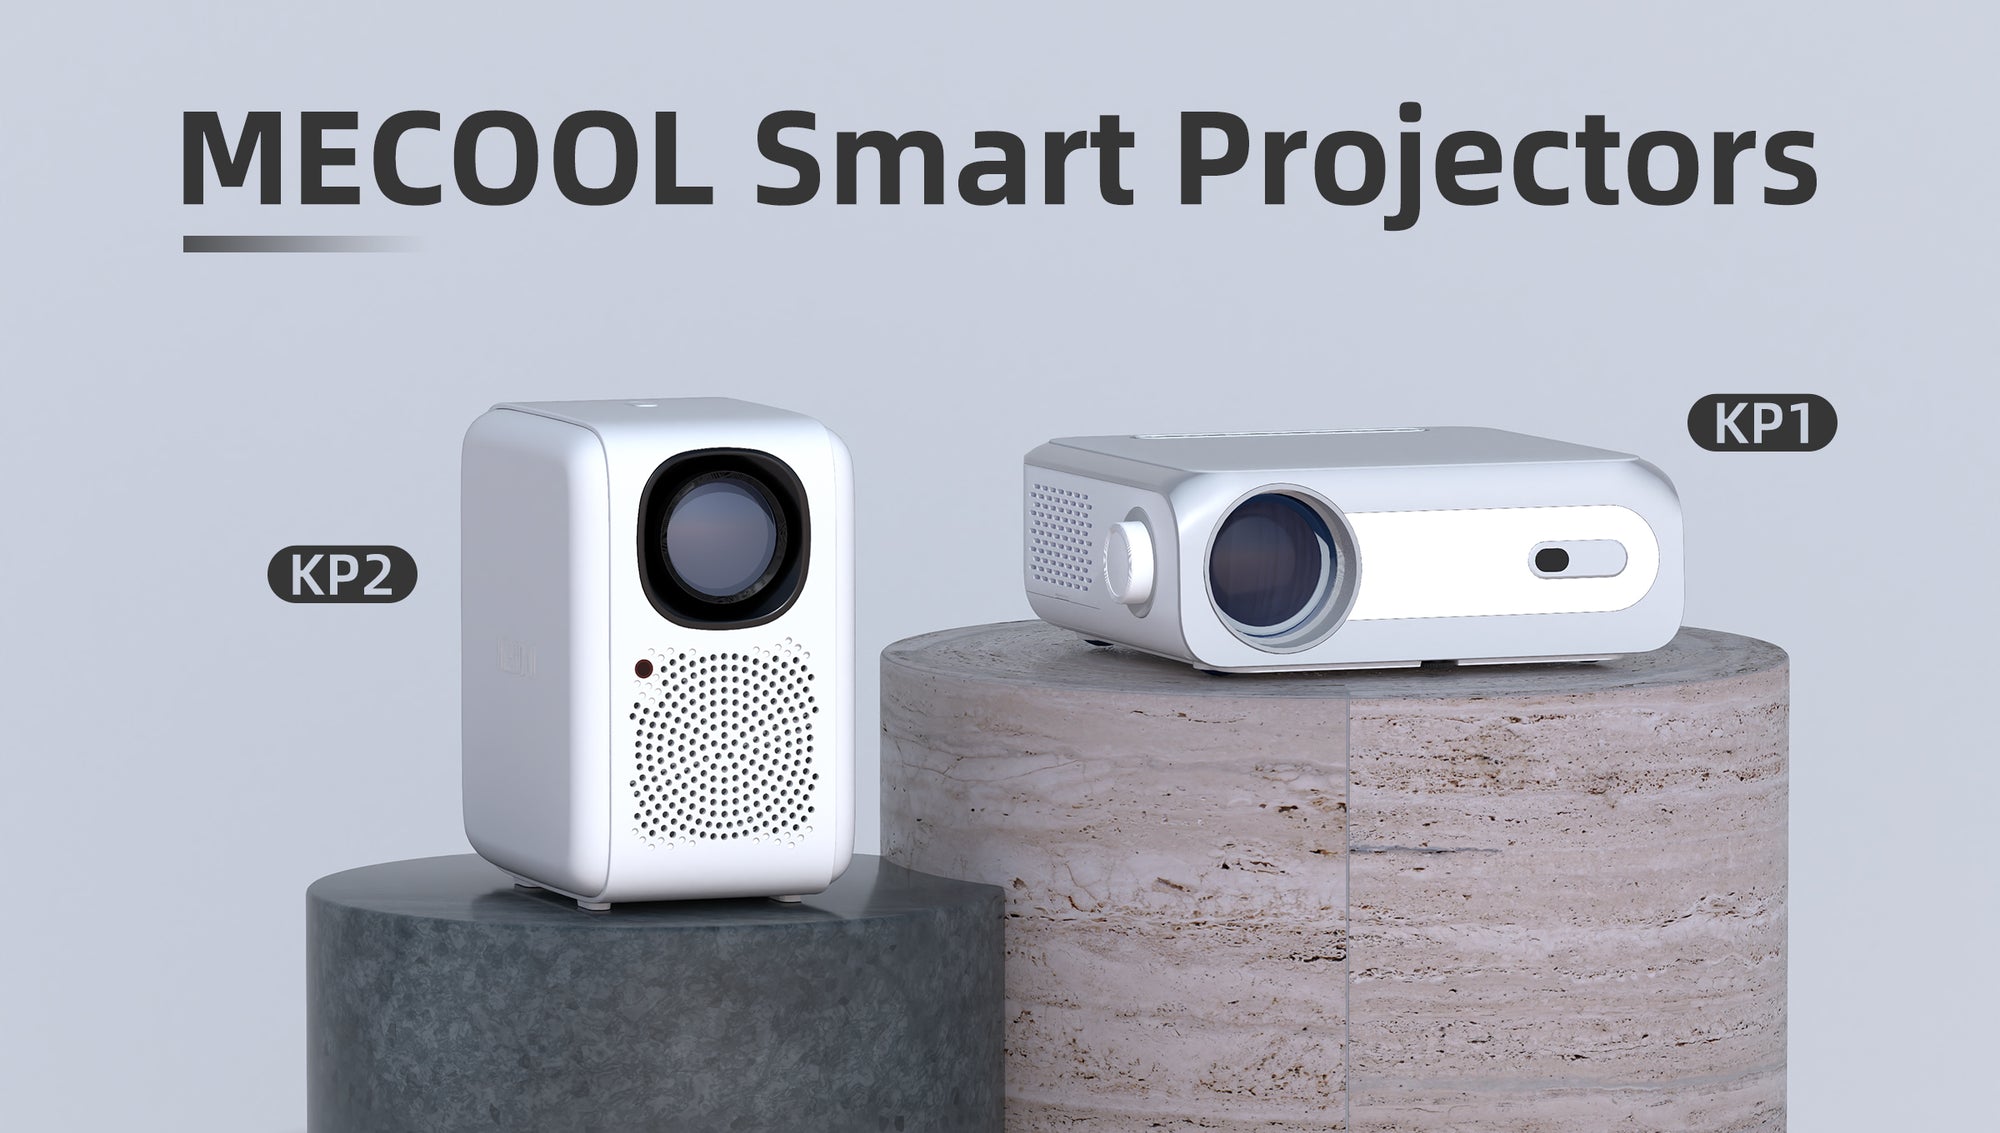 MECOOL Smart Projector KP2 VS KP1